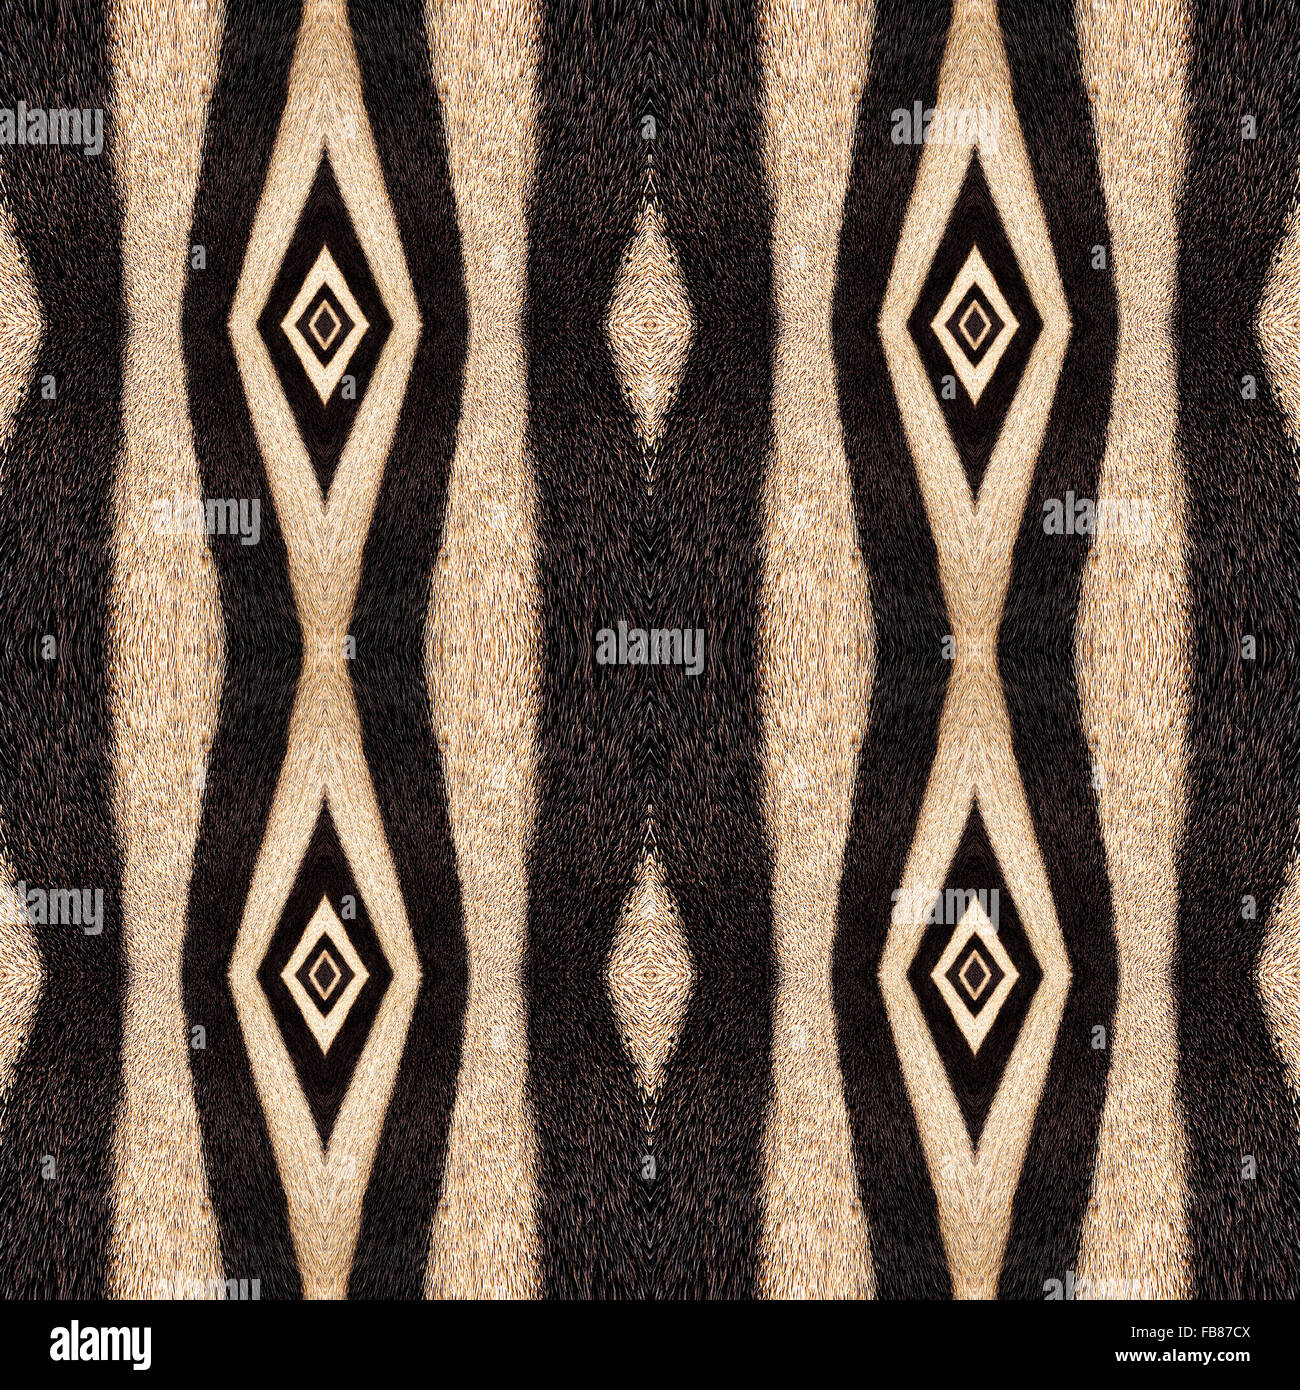 Zusammenfassung Hintergrund der Zebrastreifen. Schöne orientalische Musterdesign von Mutter Natur gemacht. Stockfoto